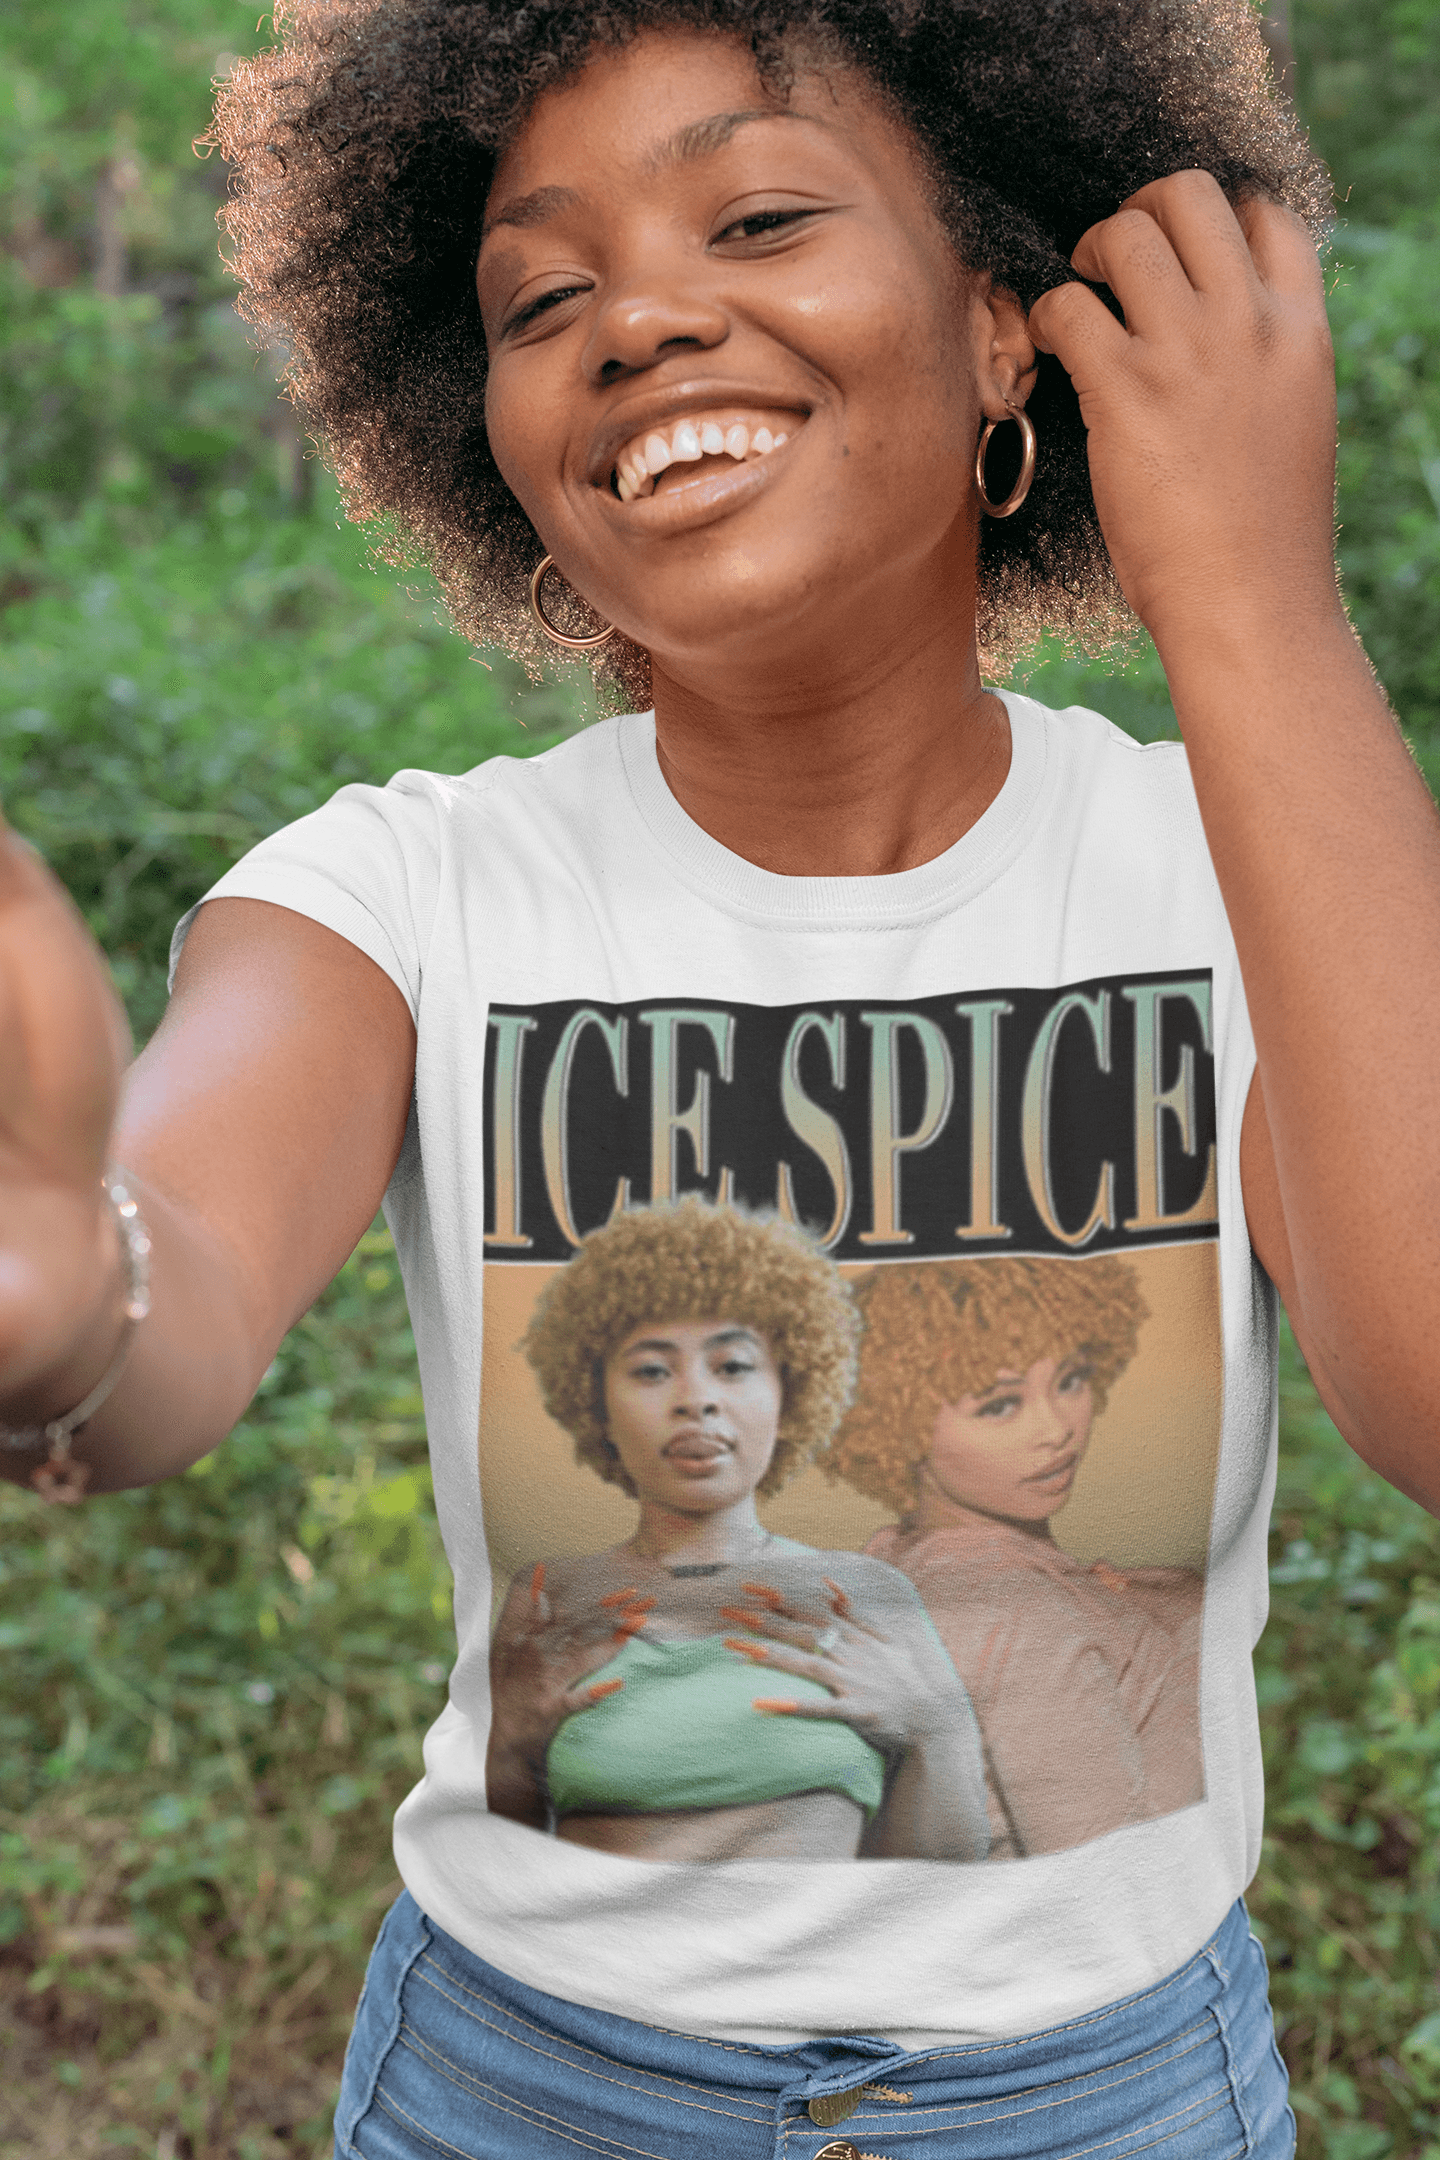 Ice Spice T-shirt Double the Spice Top Koala Softstyle Unisex Tee - TopKoalaTee